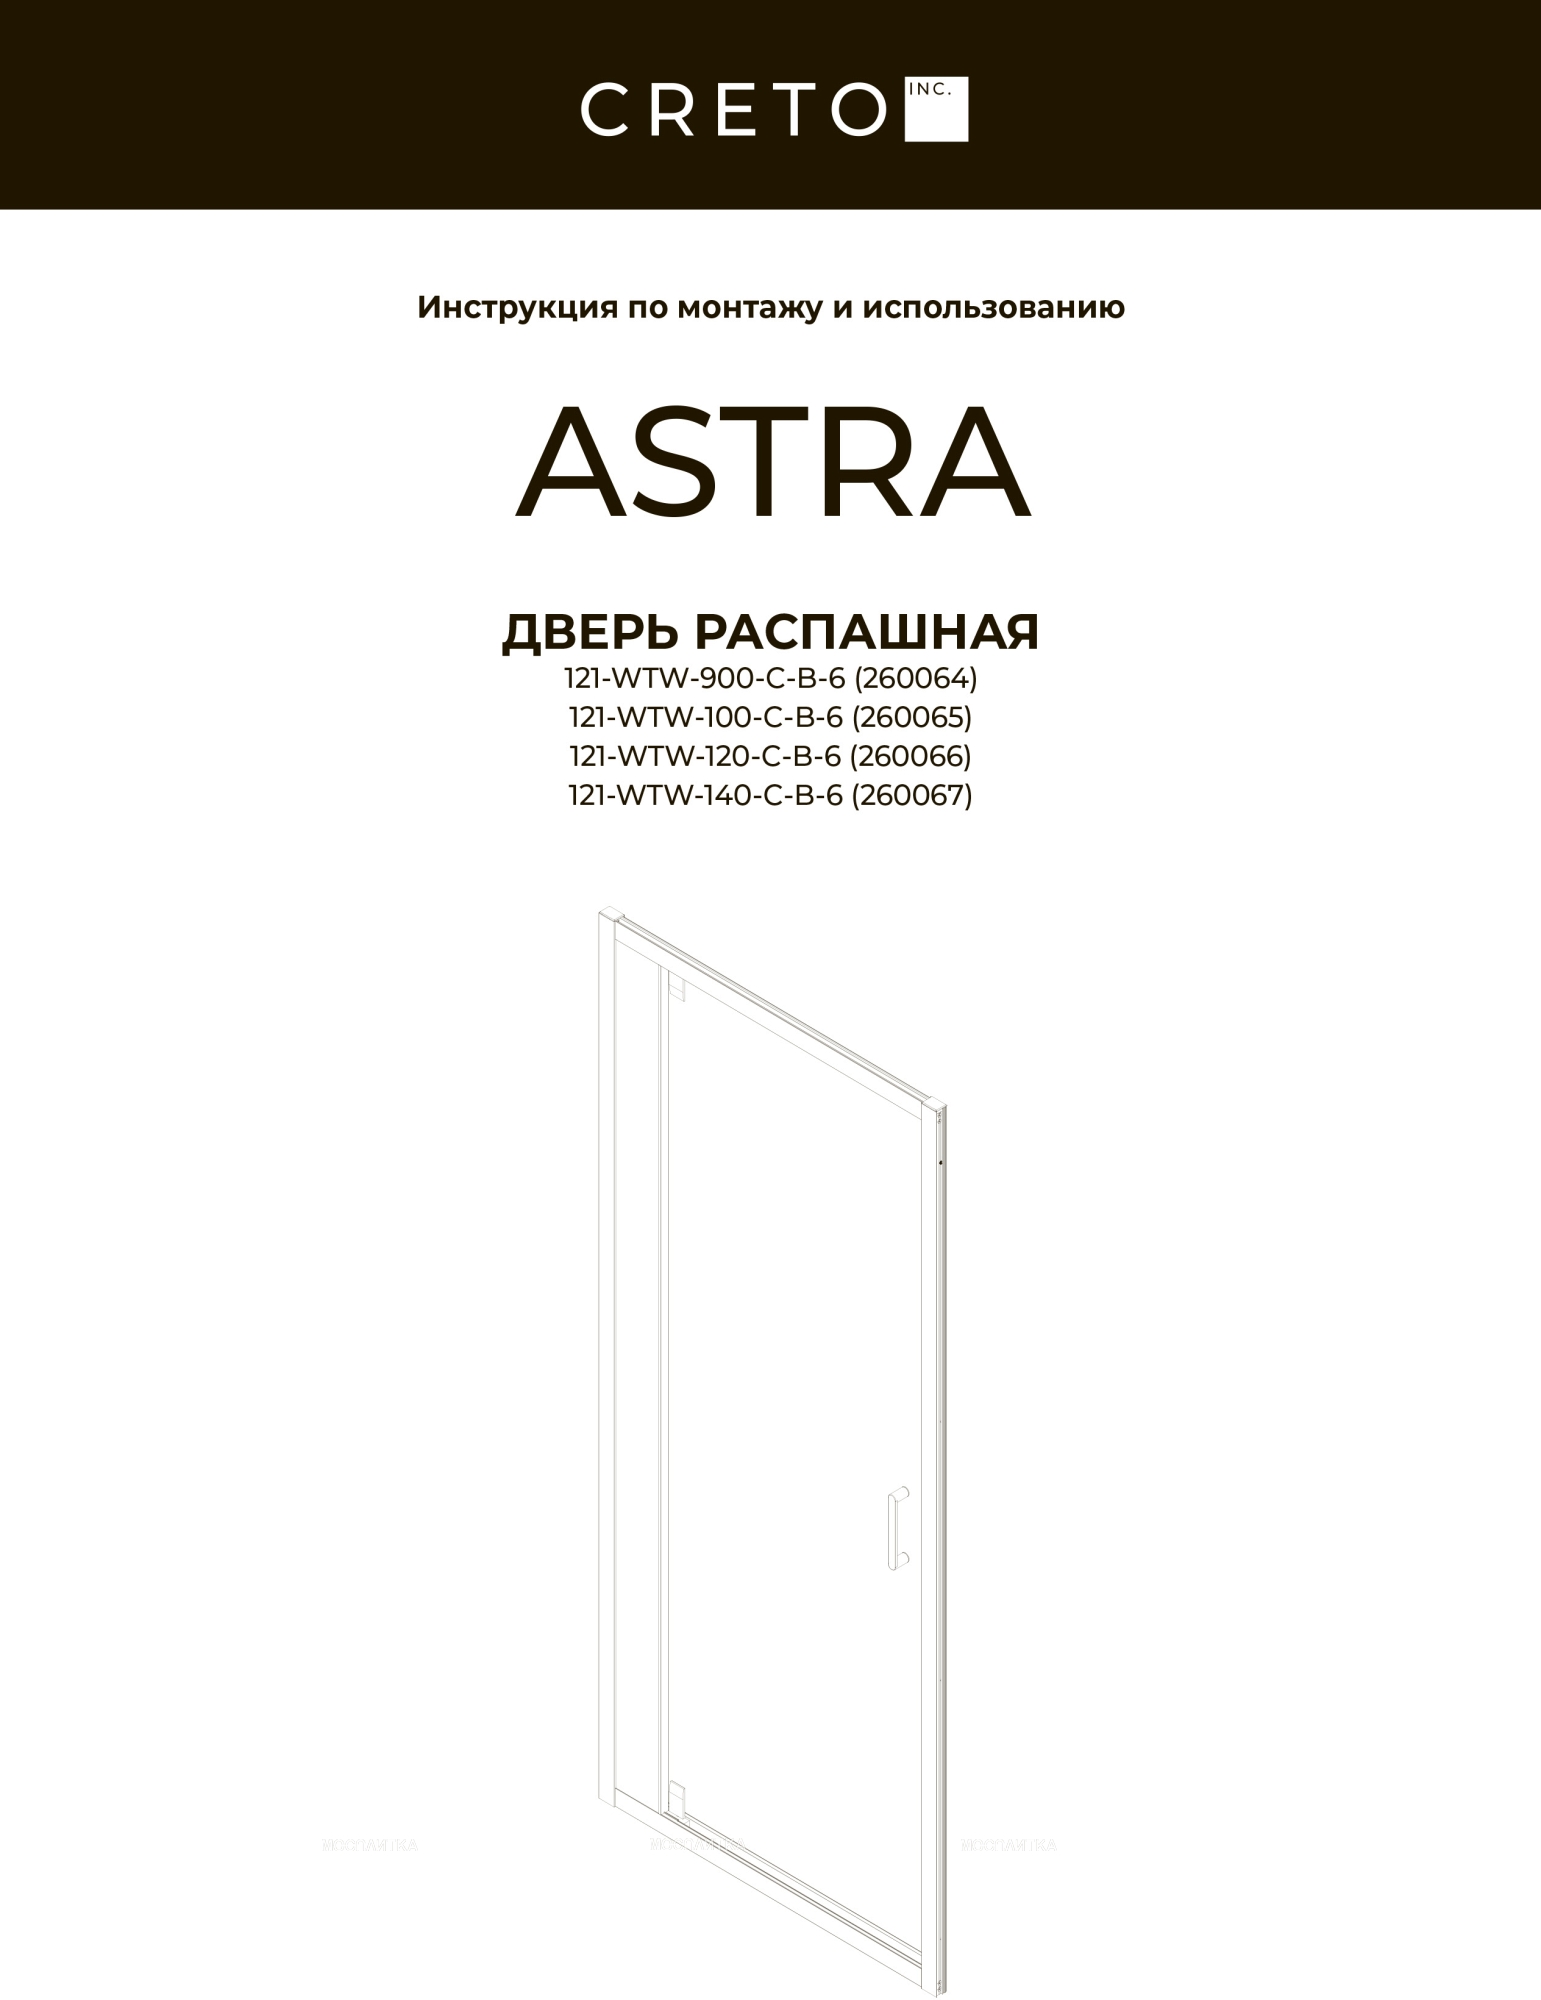 Душевая дверь Creto Astra 140х195 см 121-WTW-140-C-B-6 профиль черный, стекло прозрачное - изображение 4